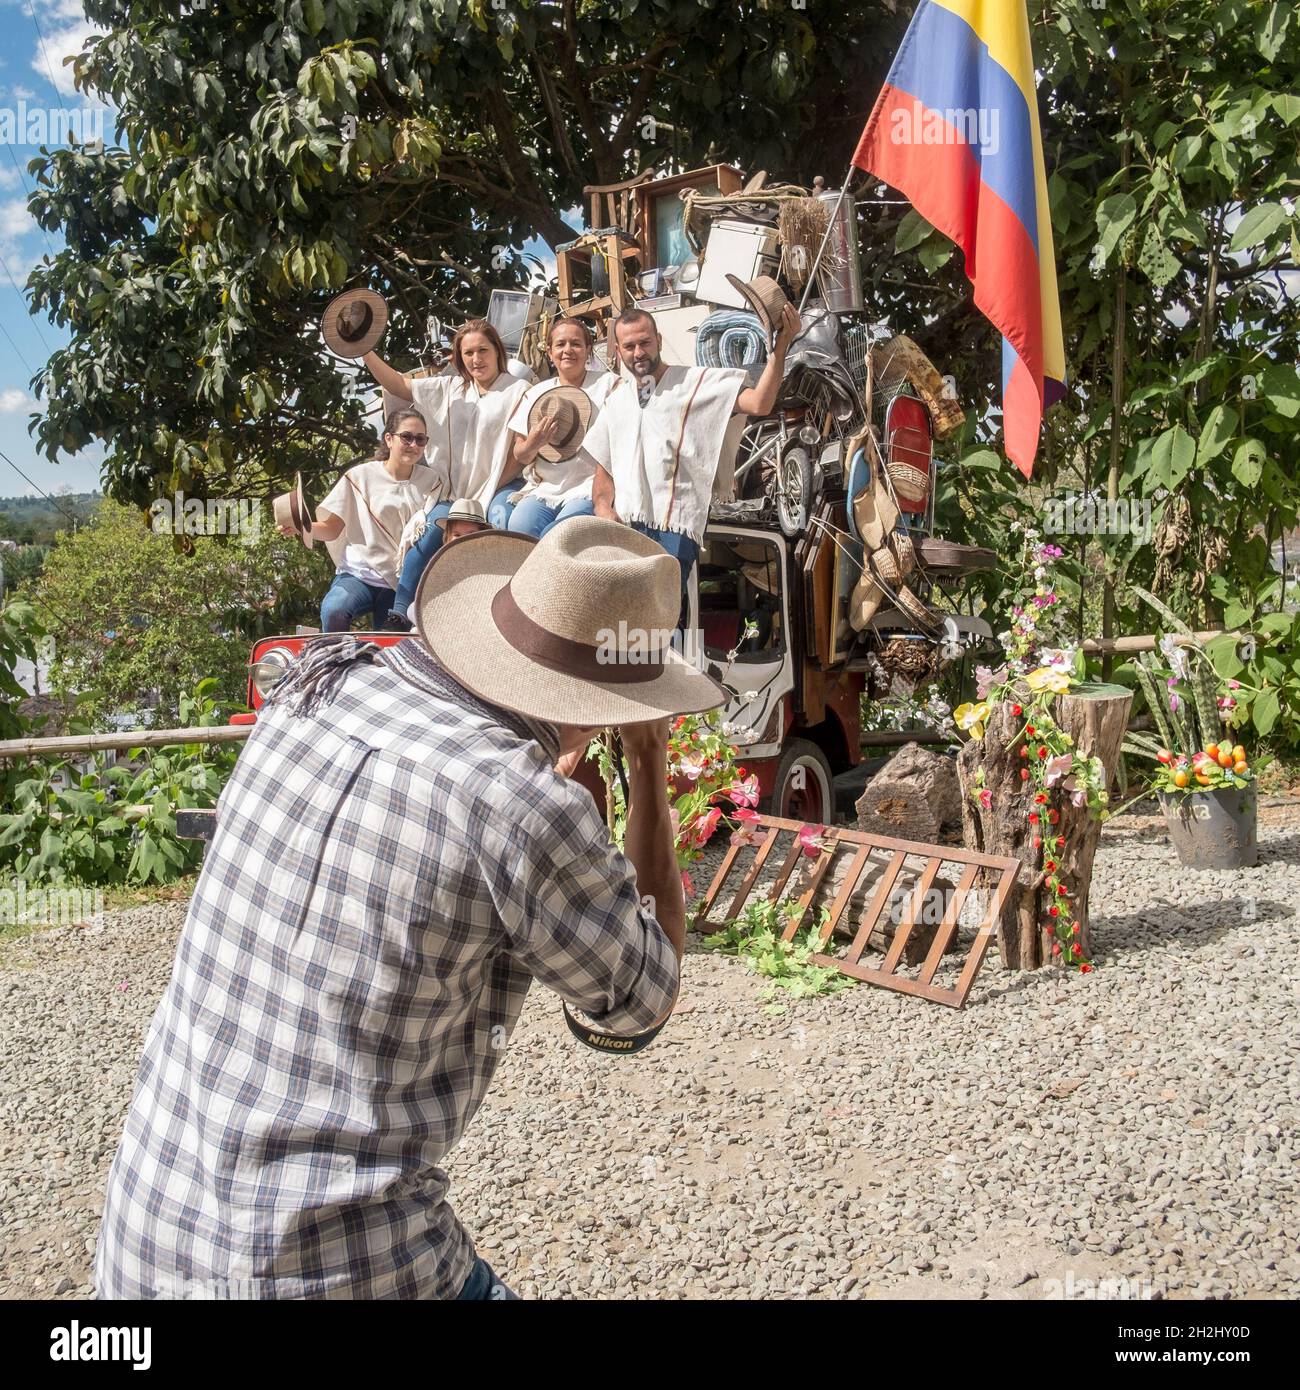 01-03-2019. Salento, Kolumbien; Touristen posieren auf einem Set und in traditioneller kolumbianischer Kleidung vor dem Fotografen, Stockfoto